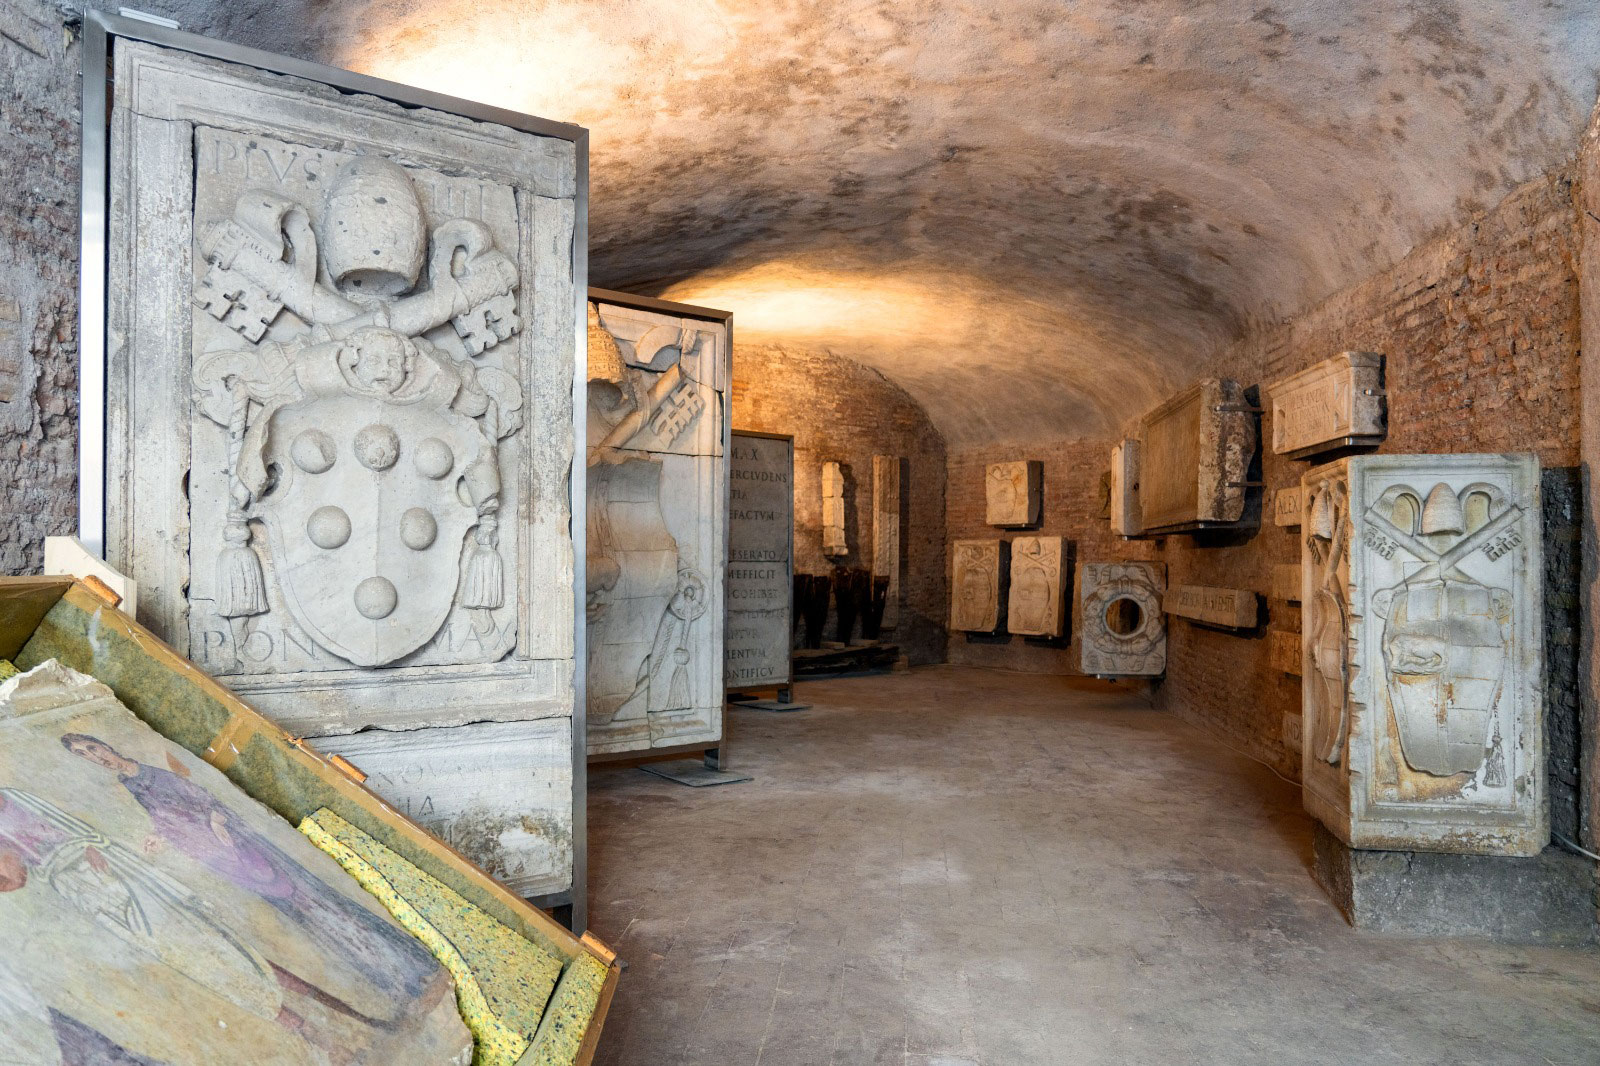 Εκατοντάδες αρχαία από τις αποθήκες του Symes γύρισαν πίσω στη Ρώμη © https://twitter.com/g_sangiuliano